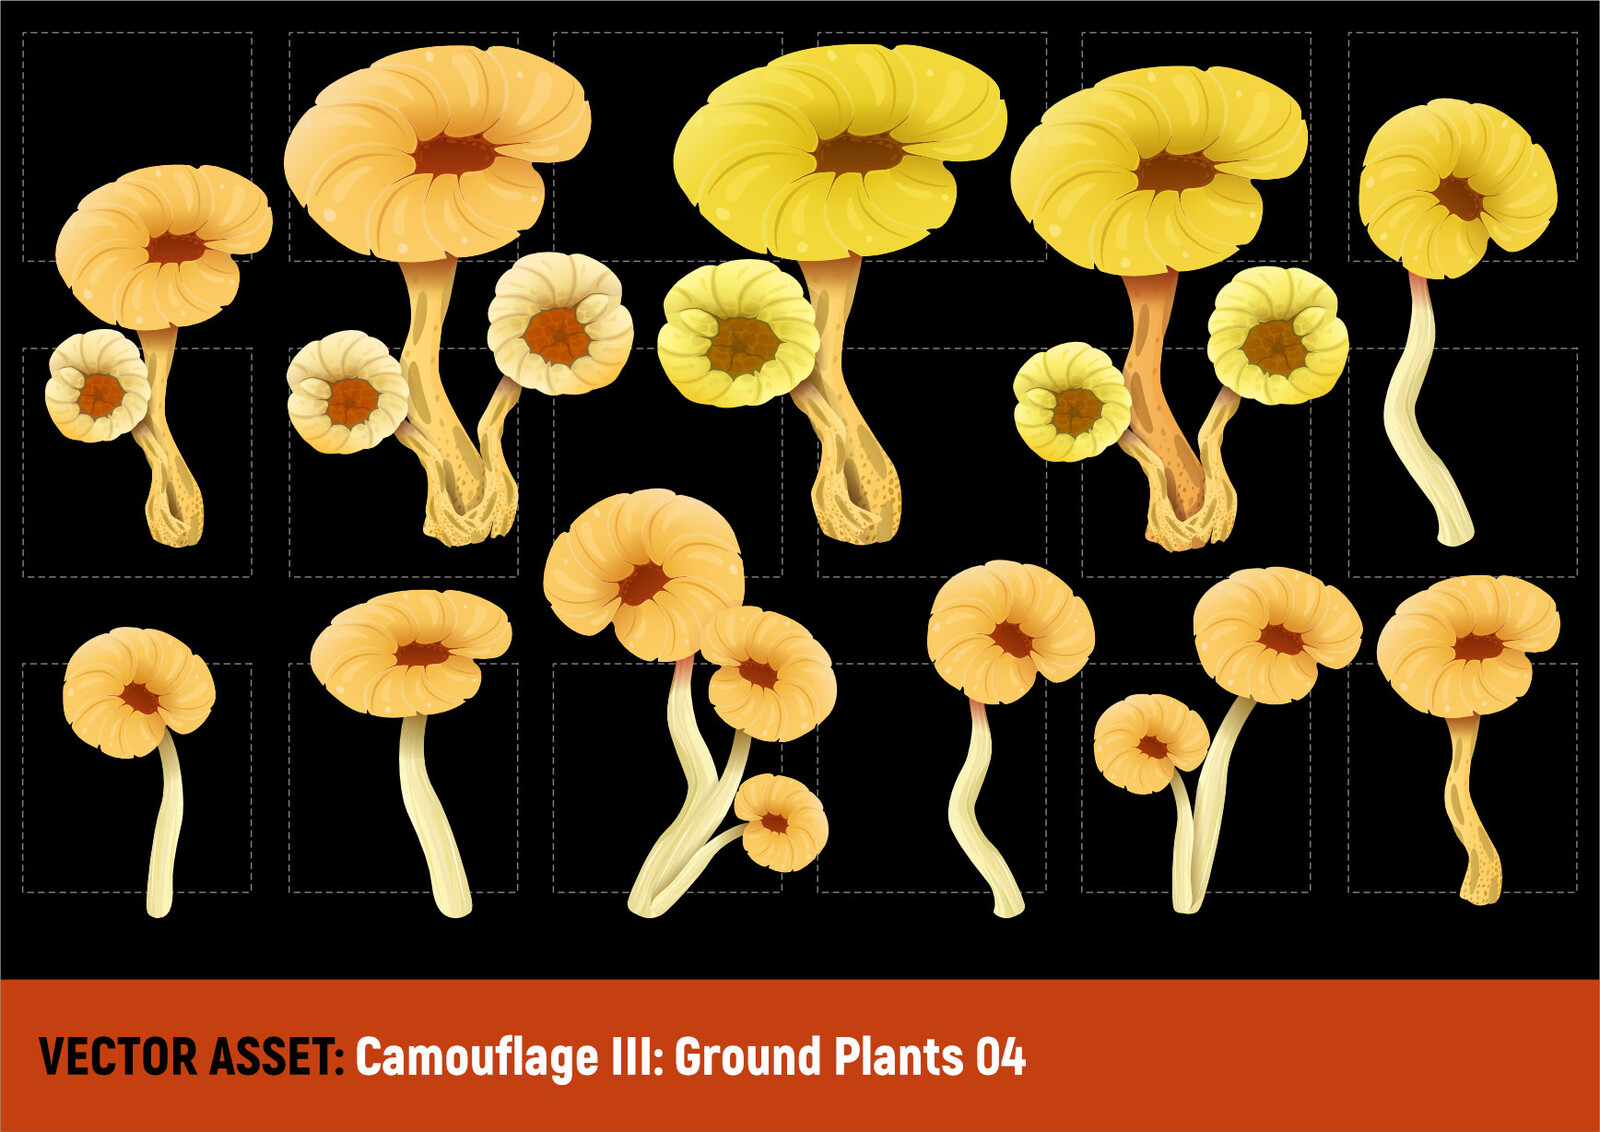 Camouflage III: Ground Plants 04